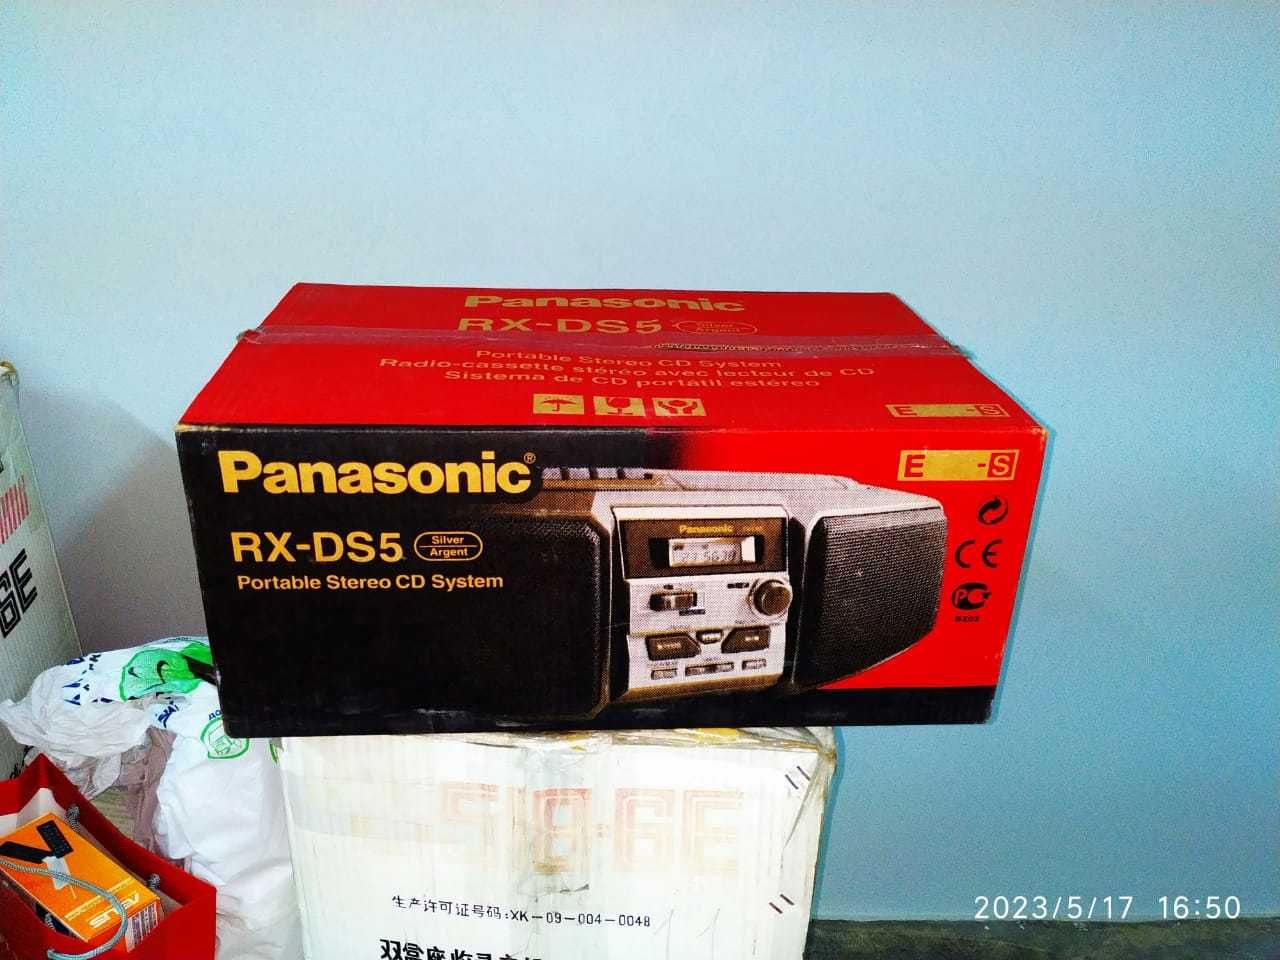 DVD програвач Panasonic RX-DS5 з радіоприймачем FM - 1500 грн